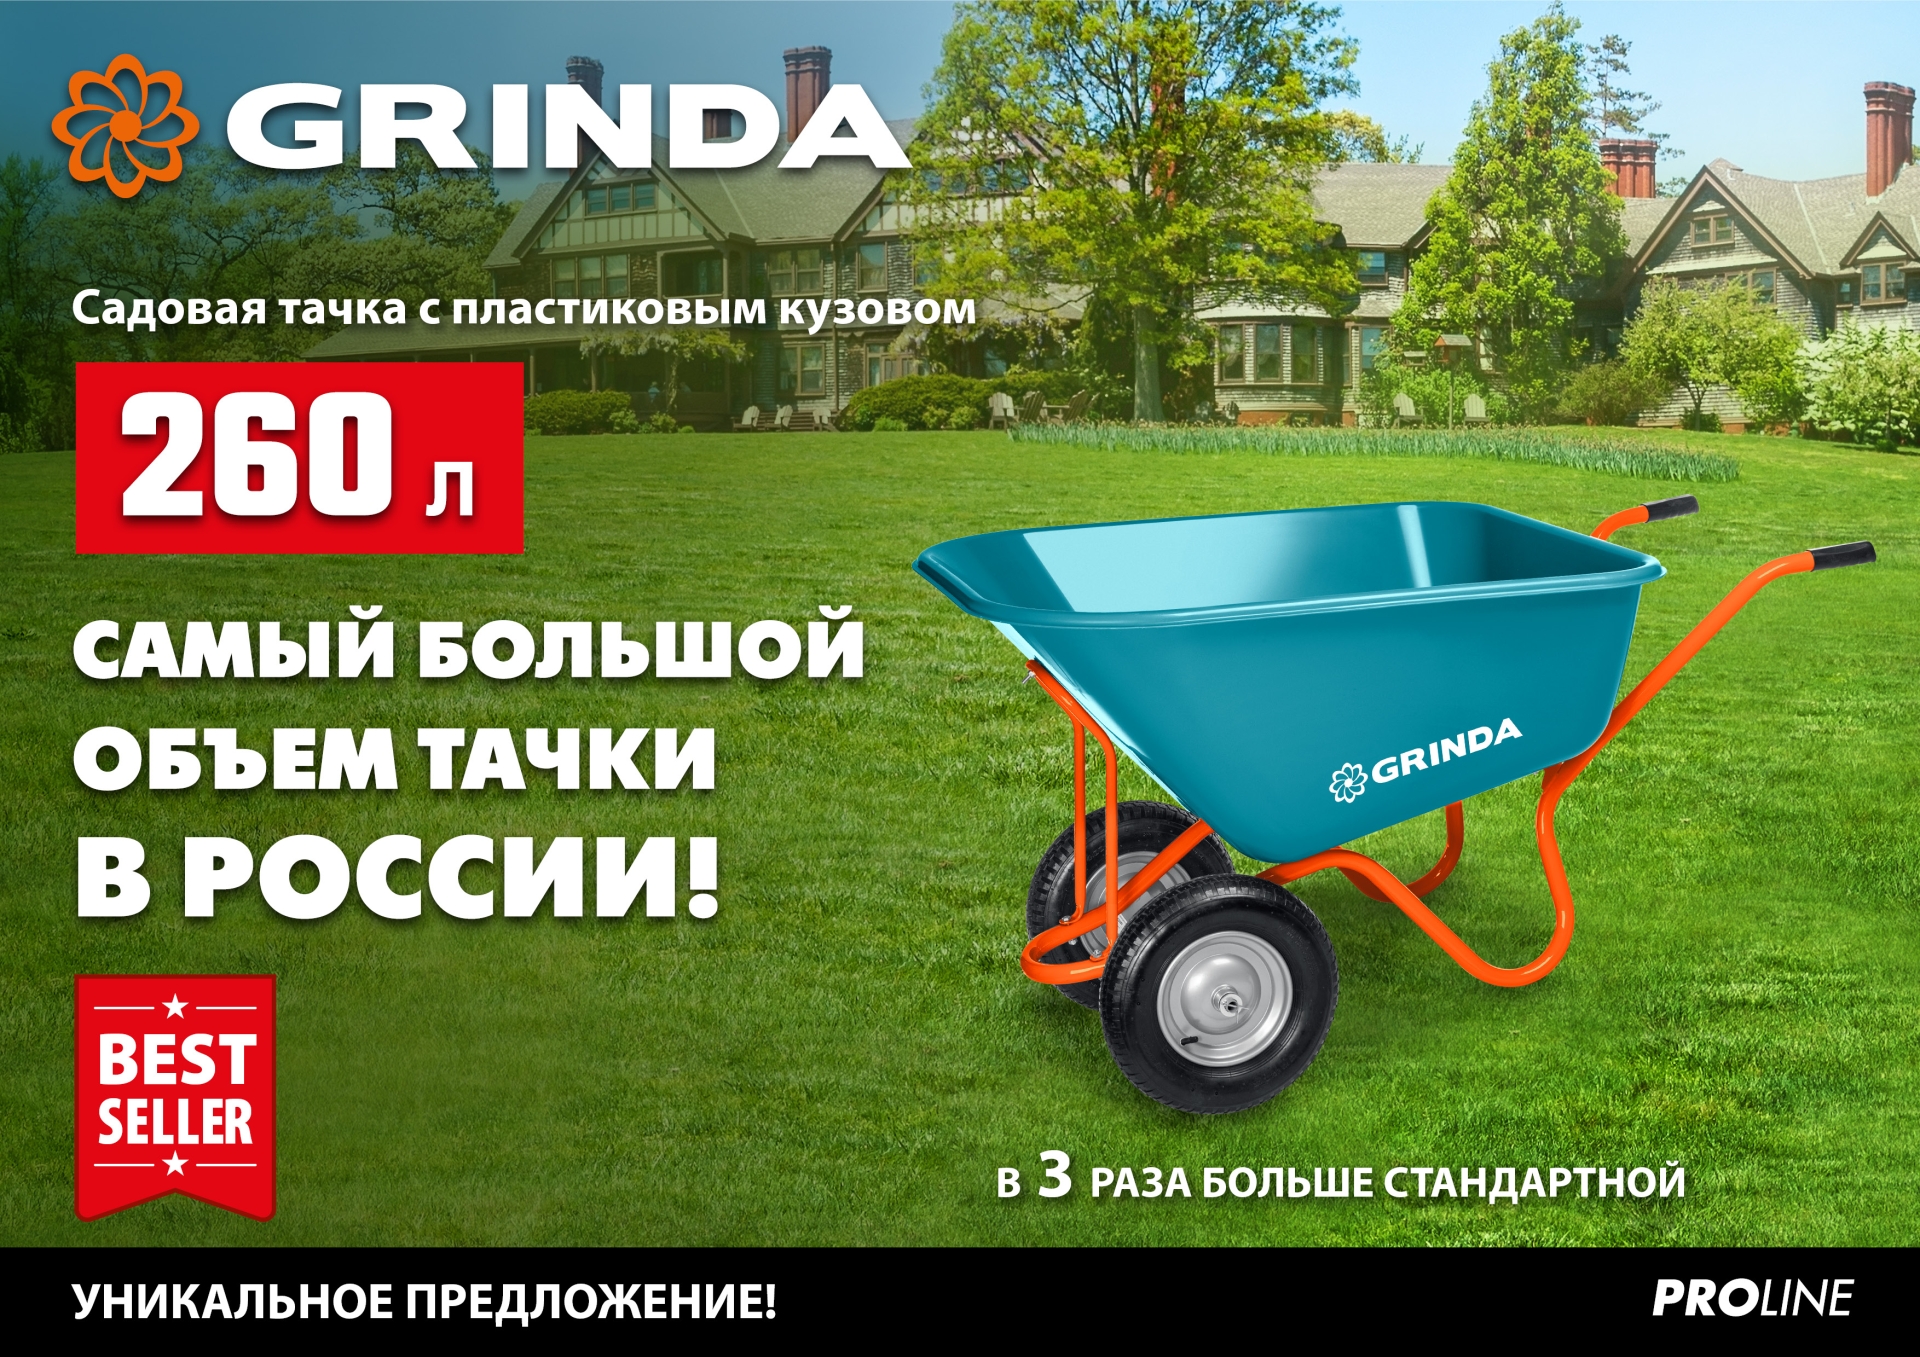 GRINDA GP-1, кузов увеличенного объема 260 л, г/п 120 кг, ударопрочный пластик, тачка садовая PROLine (422401)